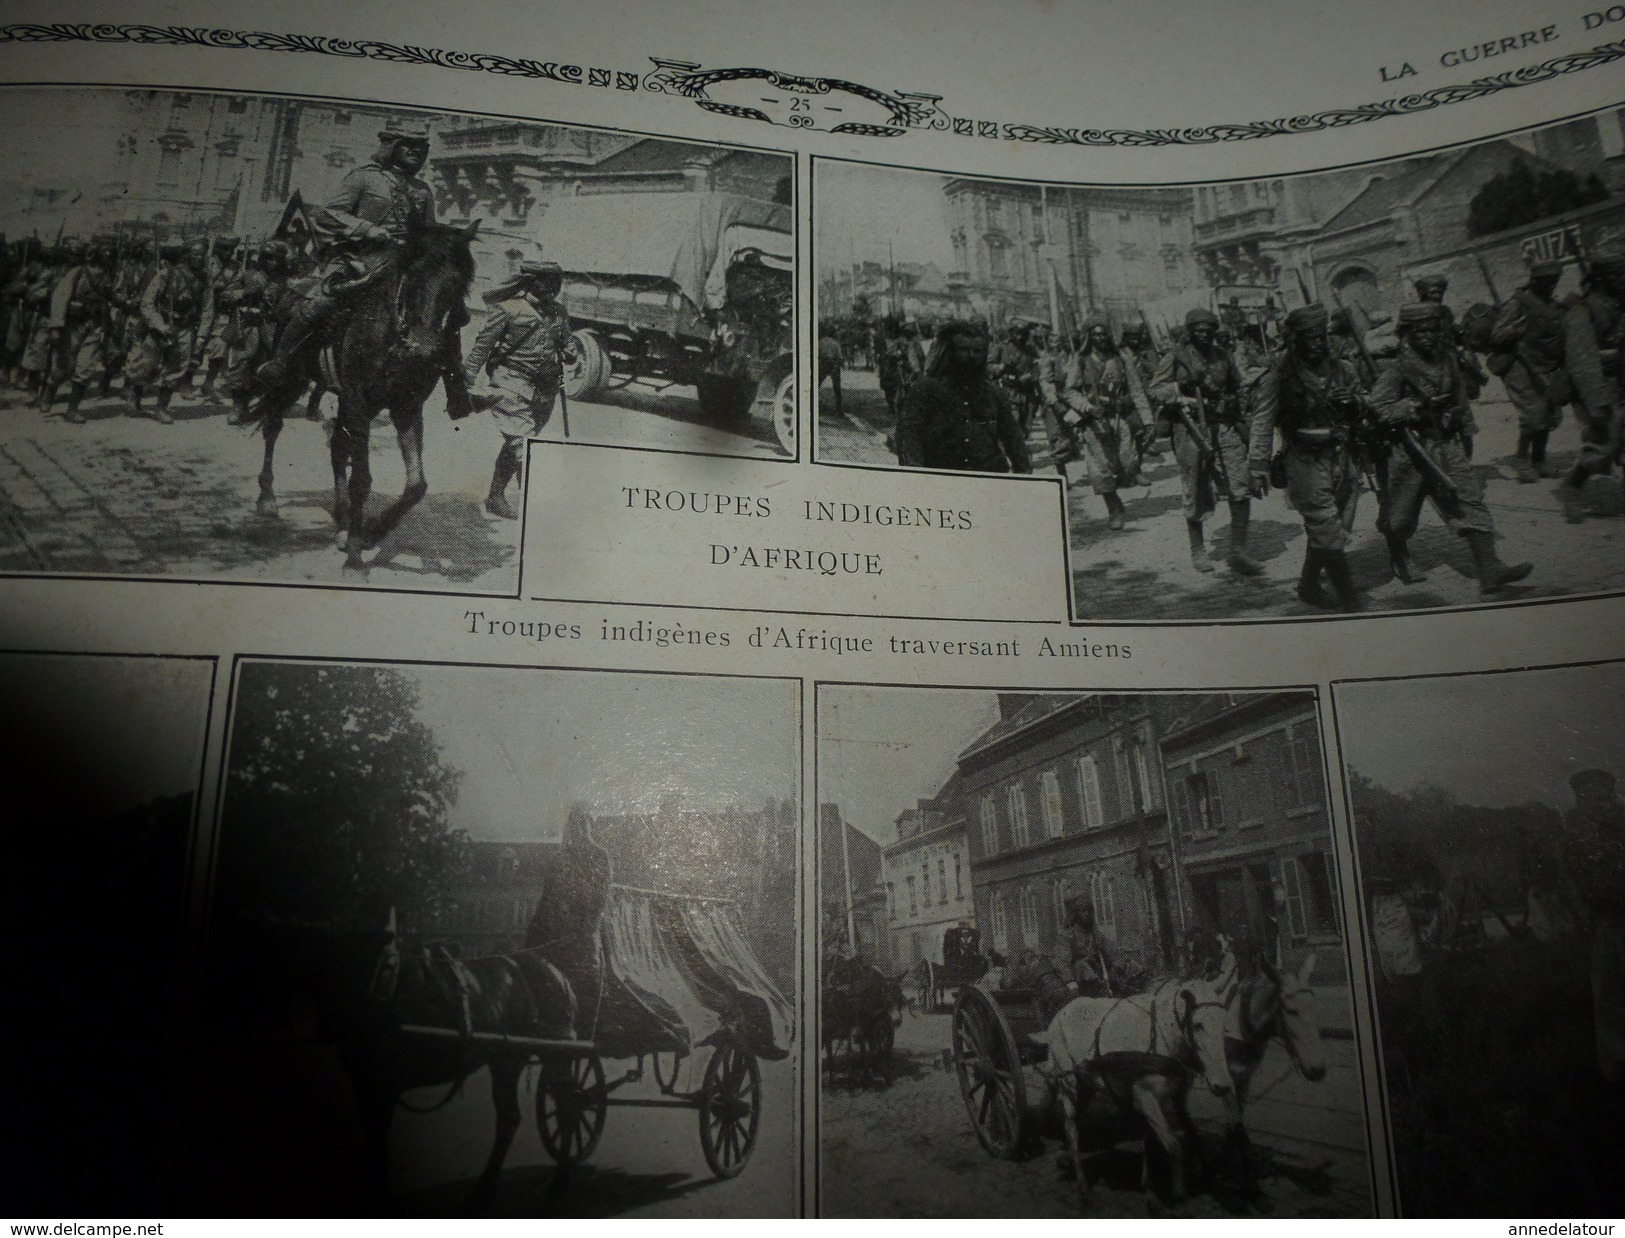 1914-1918  N°2  LA GUERRE DOCUMENTEE ,par Schwarz & Cie  (nombreuses photographies,dessins et gravures)